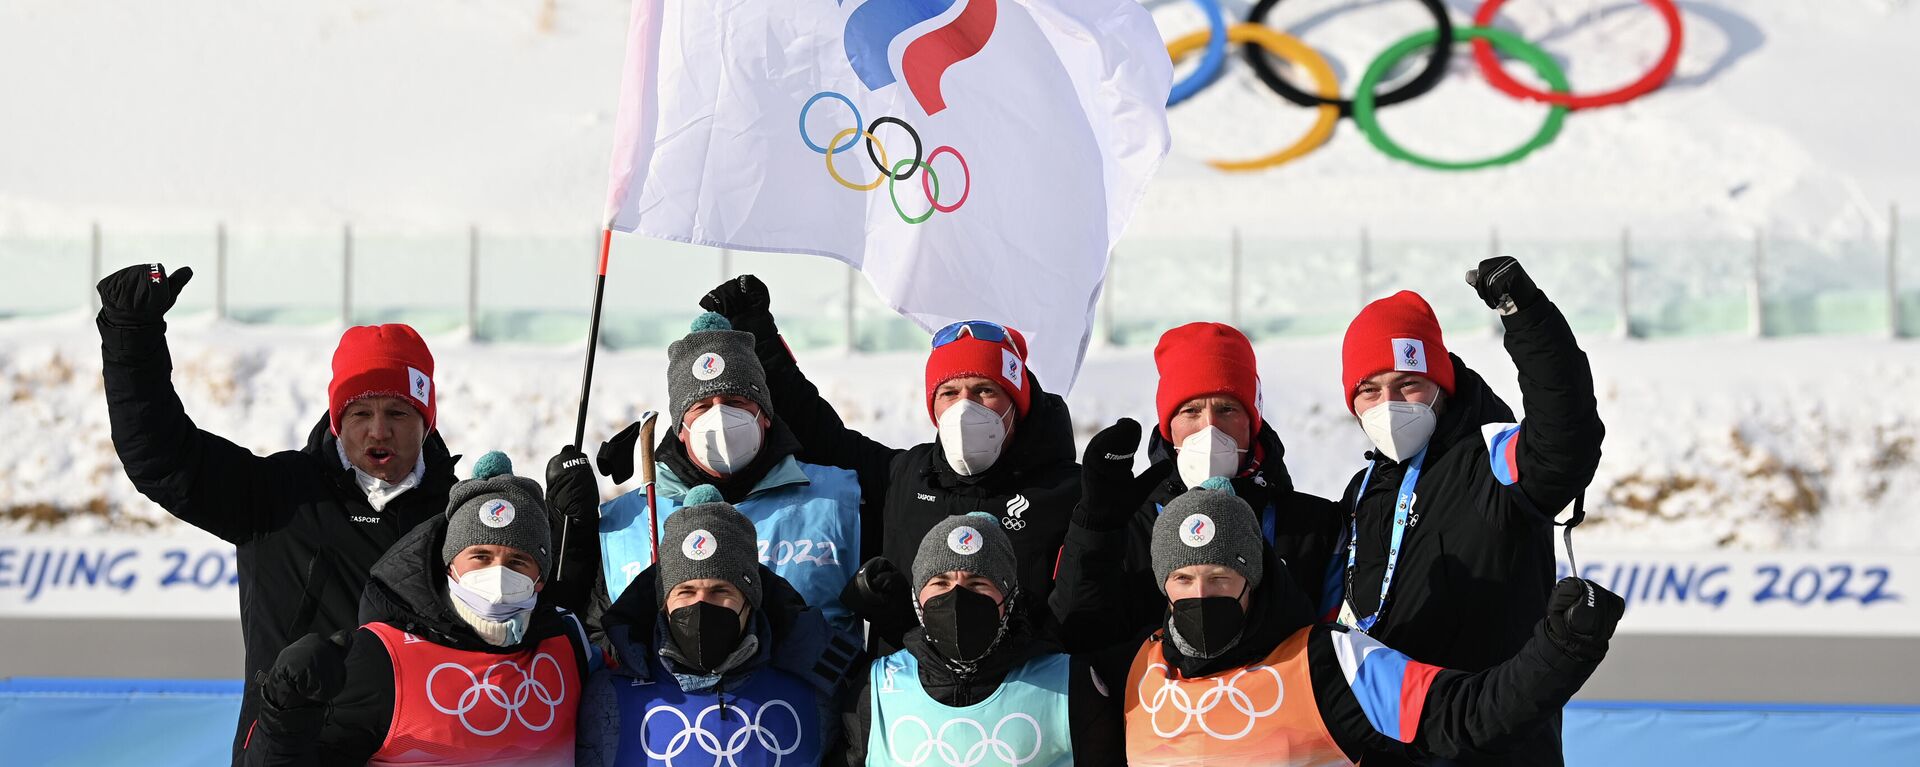 Los biatletas rusos conquistaron medallas de bronce en el relevo masculino 4 x 7,5 km en los Juegos Olímpicos de Invierno de Pekín 2022 - Sputnik Mundo, 1920, 06.09.2022